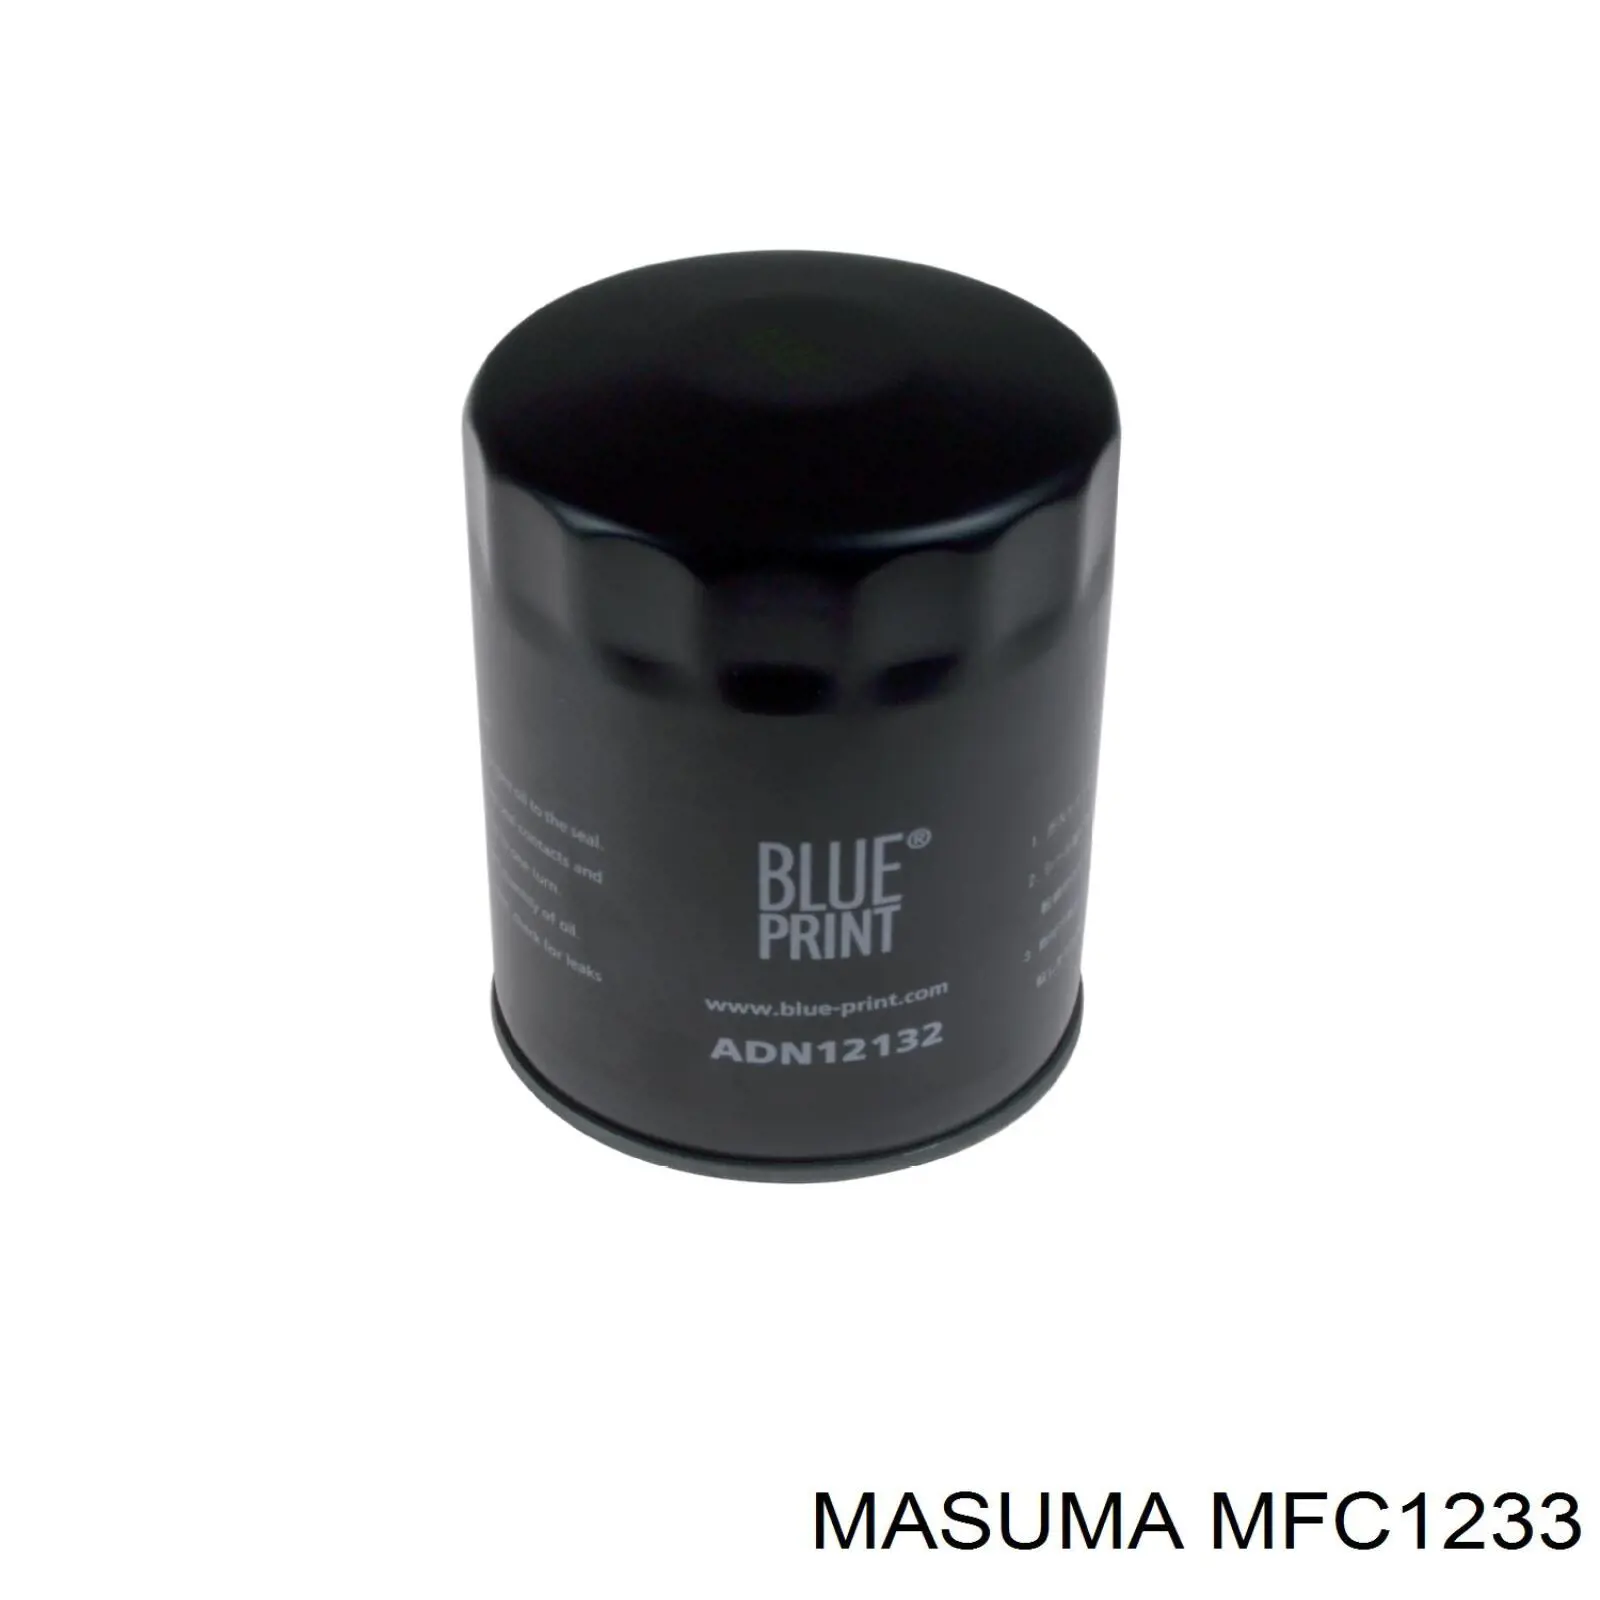 MFC1233 Masuma масляный фильтр